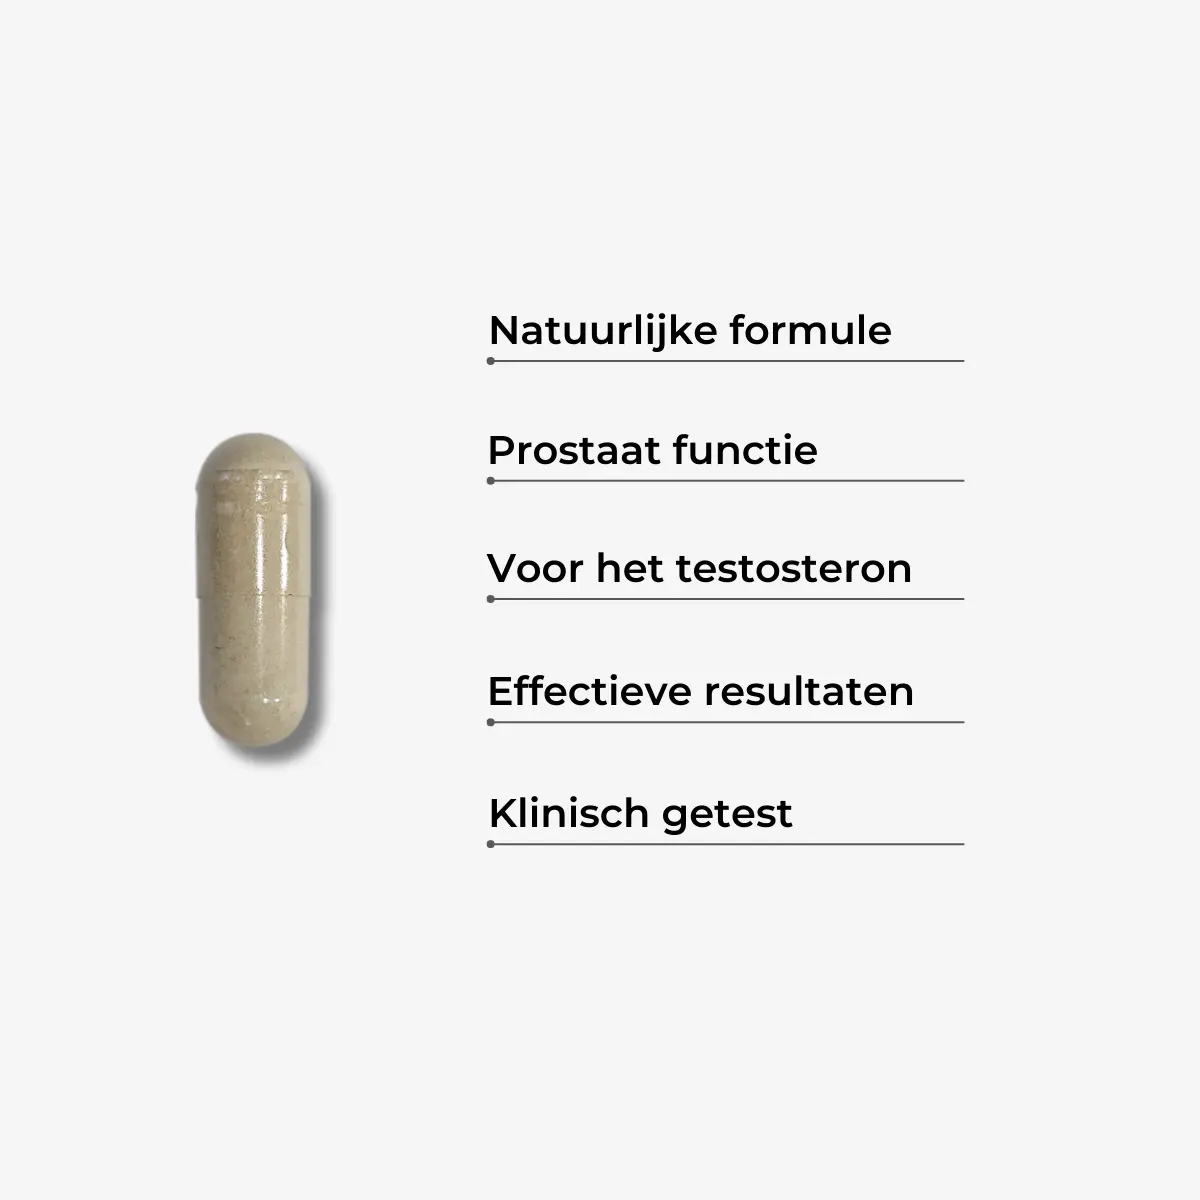 Supplement prostaat